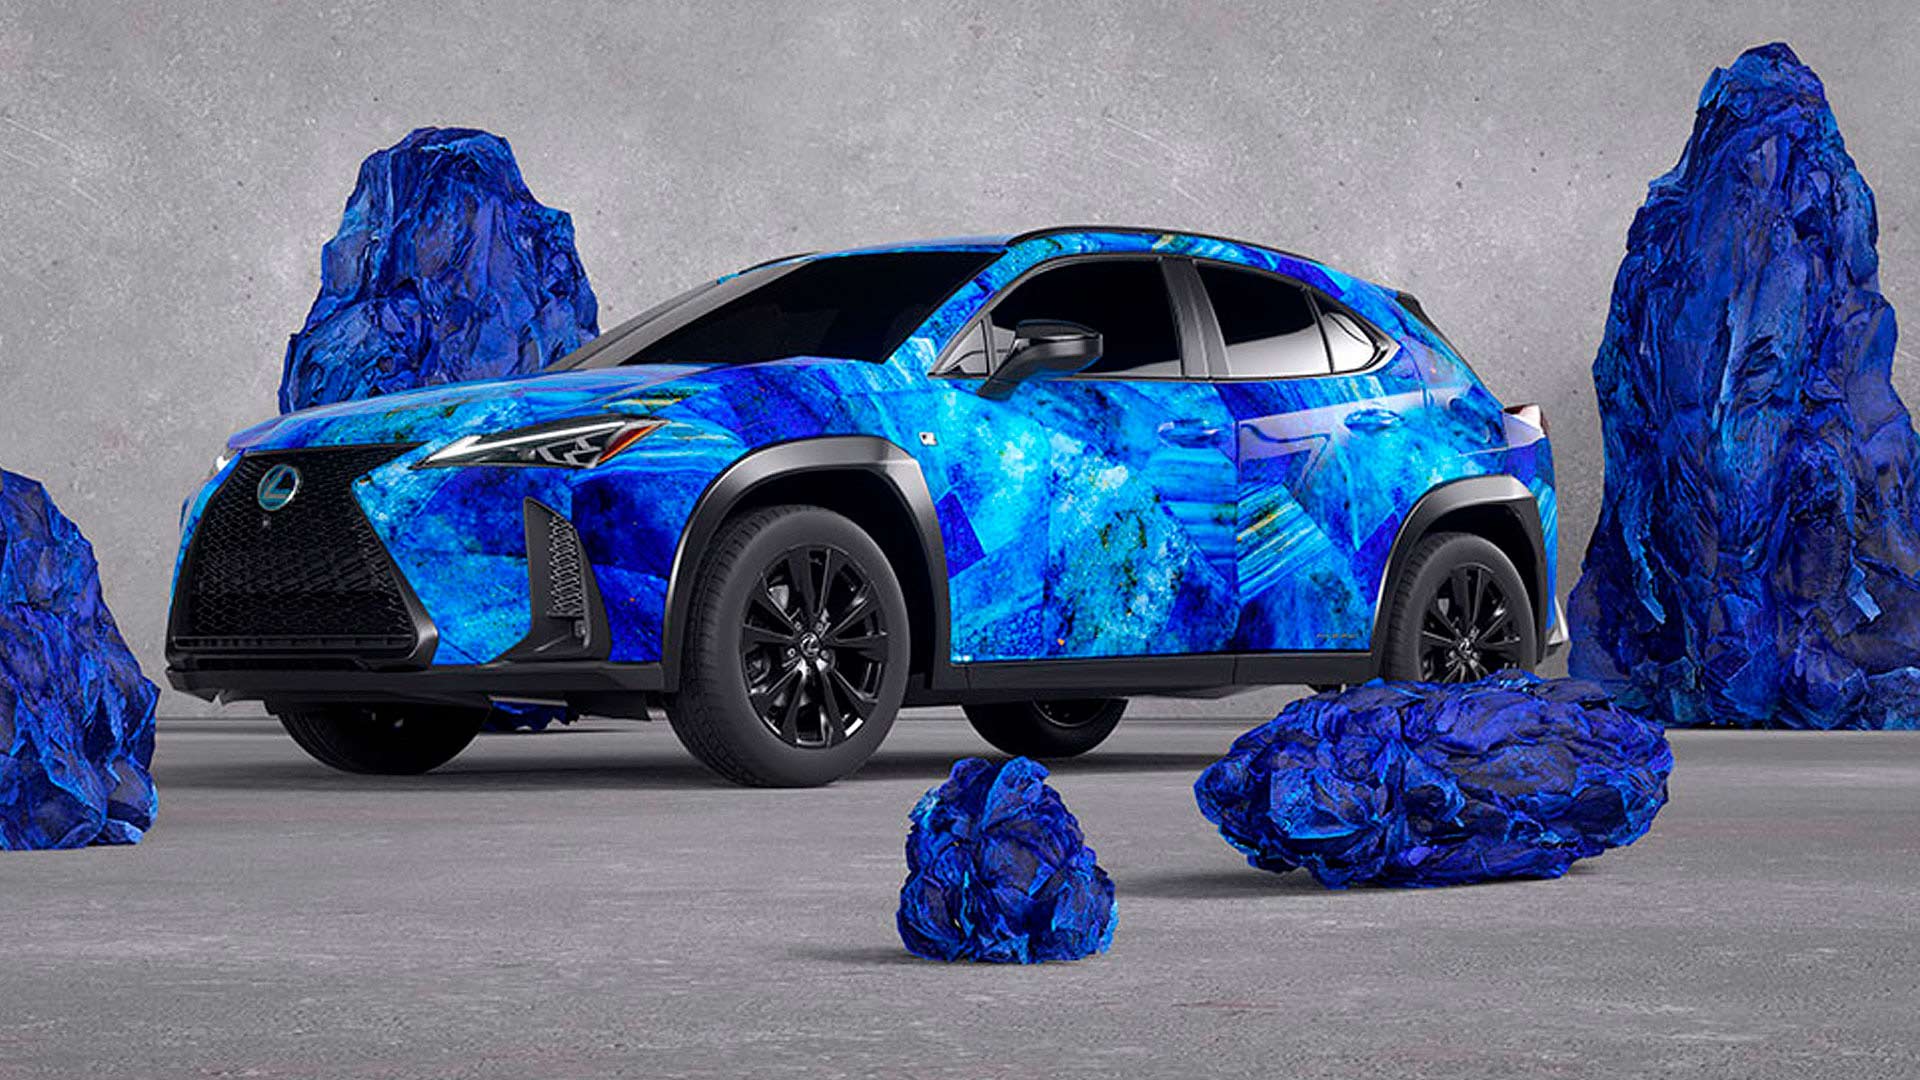 Bemalter Lexus mit blauem Motiv vor blauen Felsen.